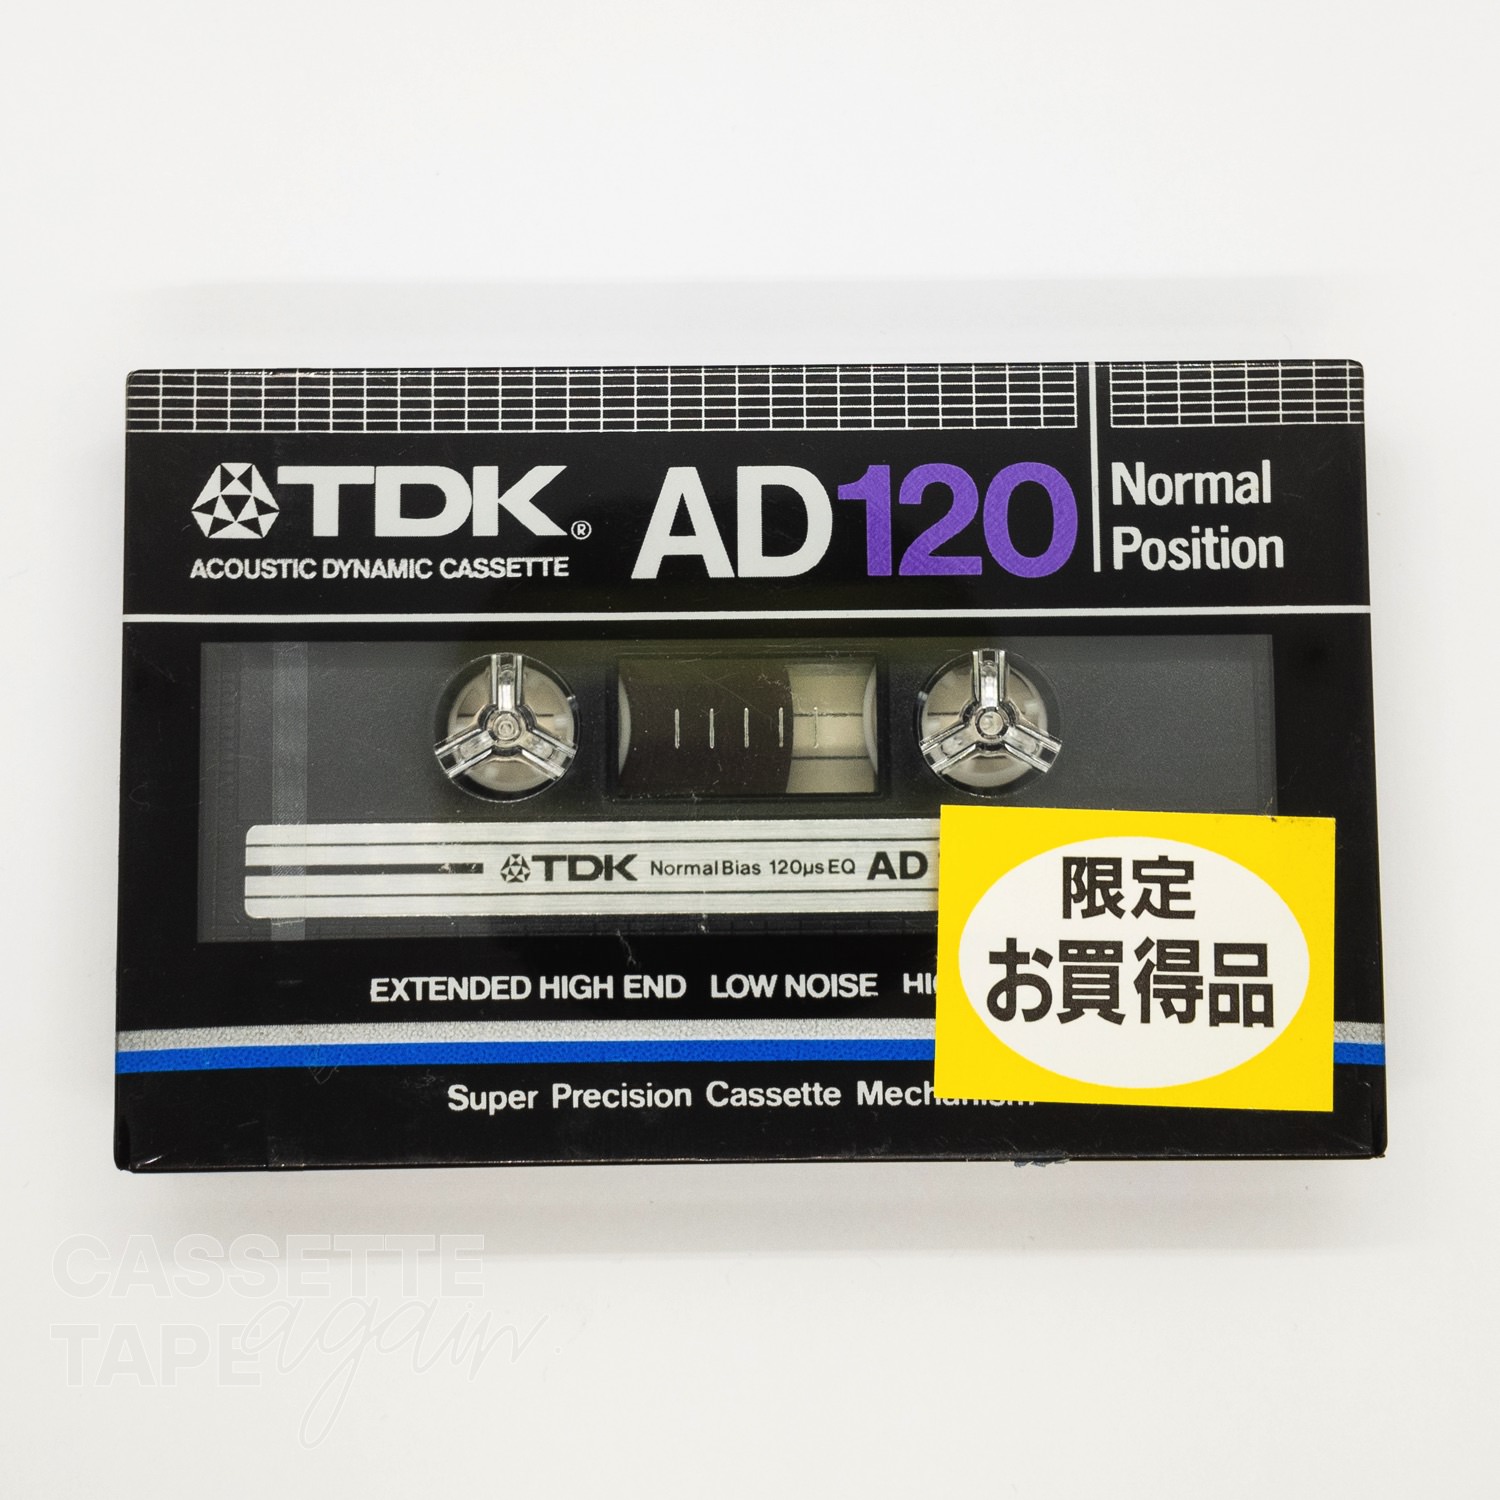 AD 120 / TDK(ノーマル)